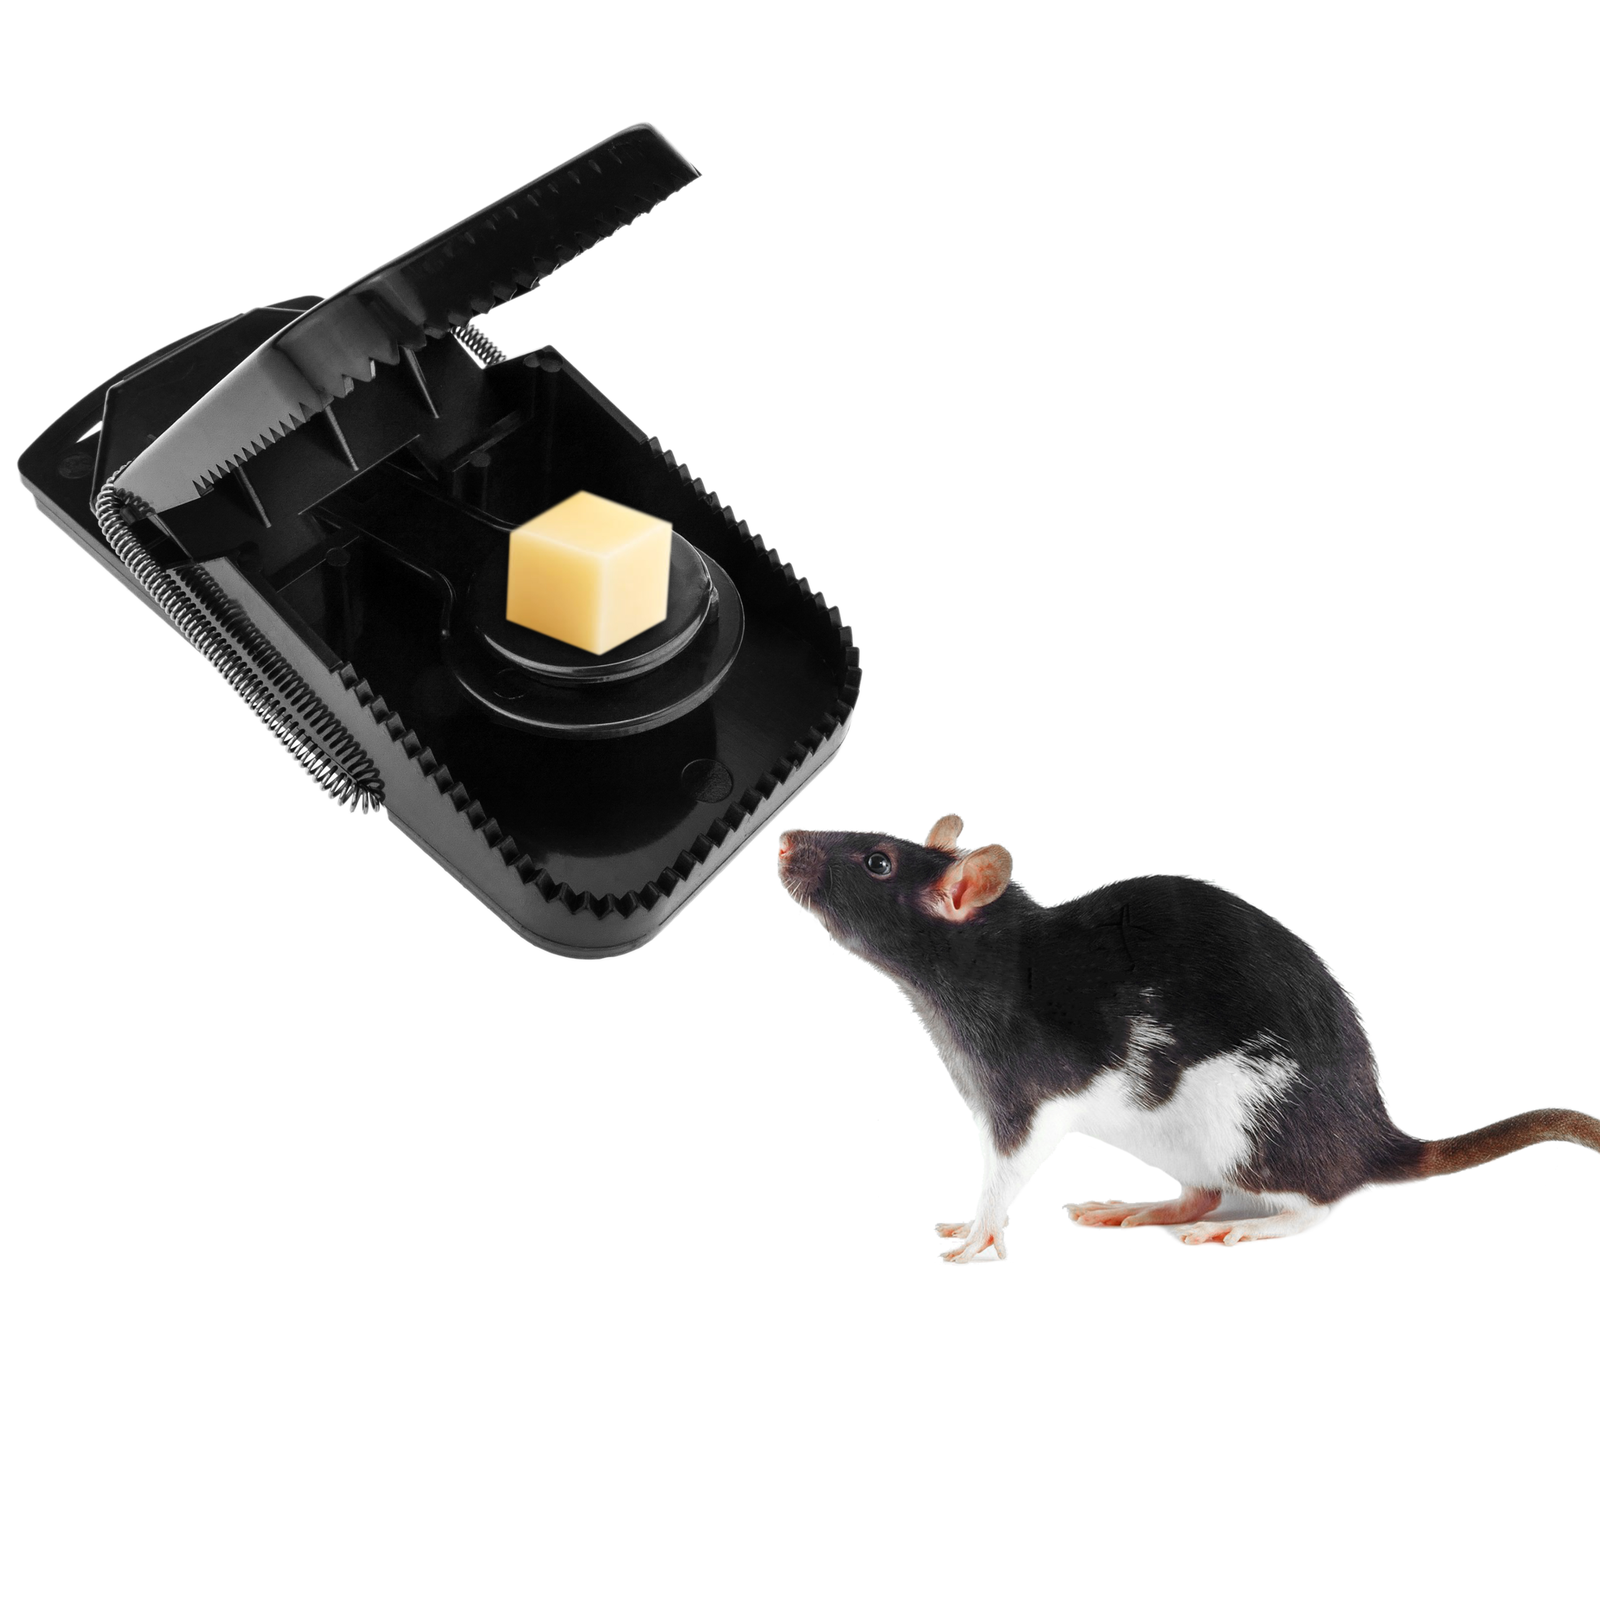 10 Piege A Souris - Tapette Souris Rutilisables et Faciles Utiliser -  Plastique Pige Souris - Noir - Pour Intrieur Cuisine Maison Jardin - Pige  Rat